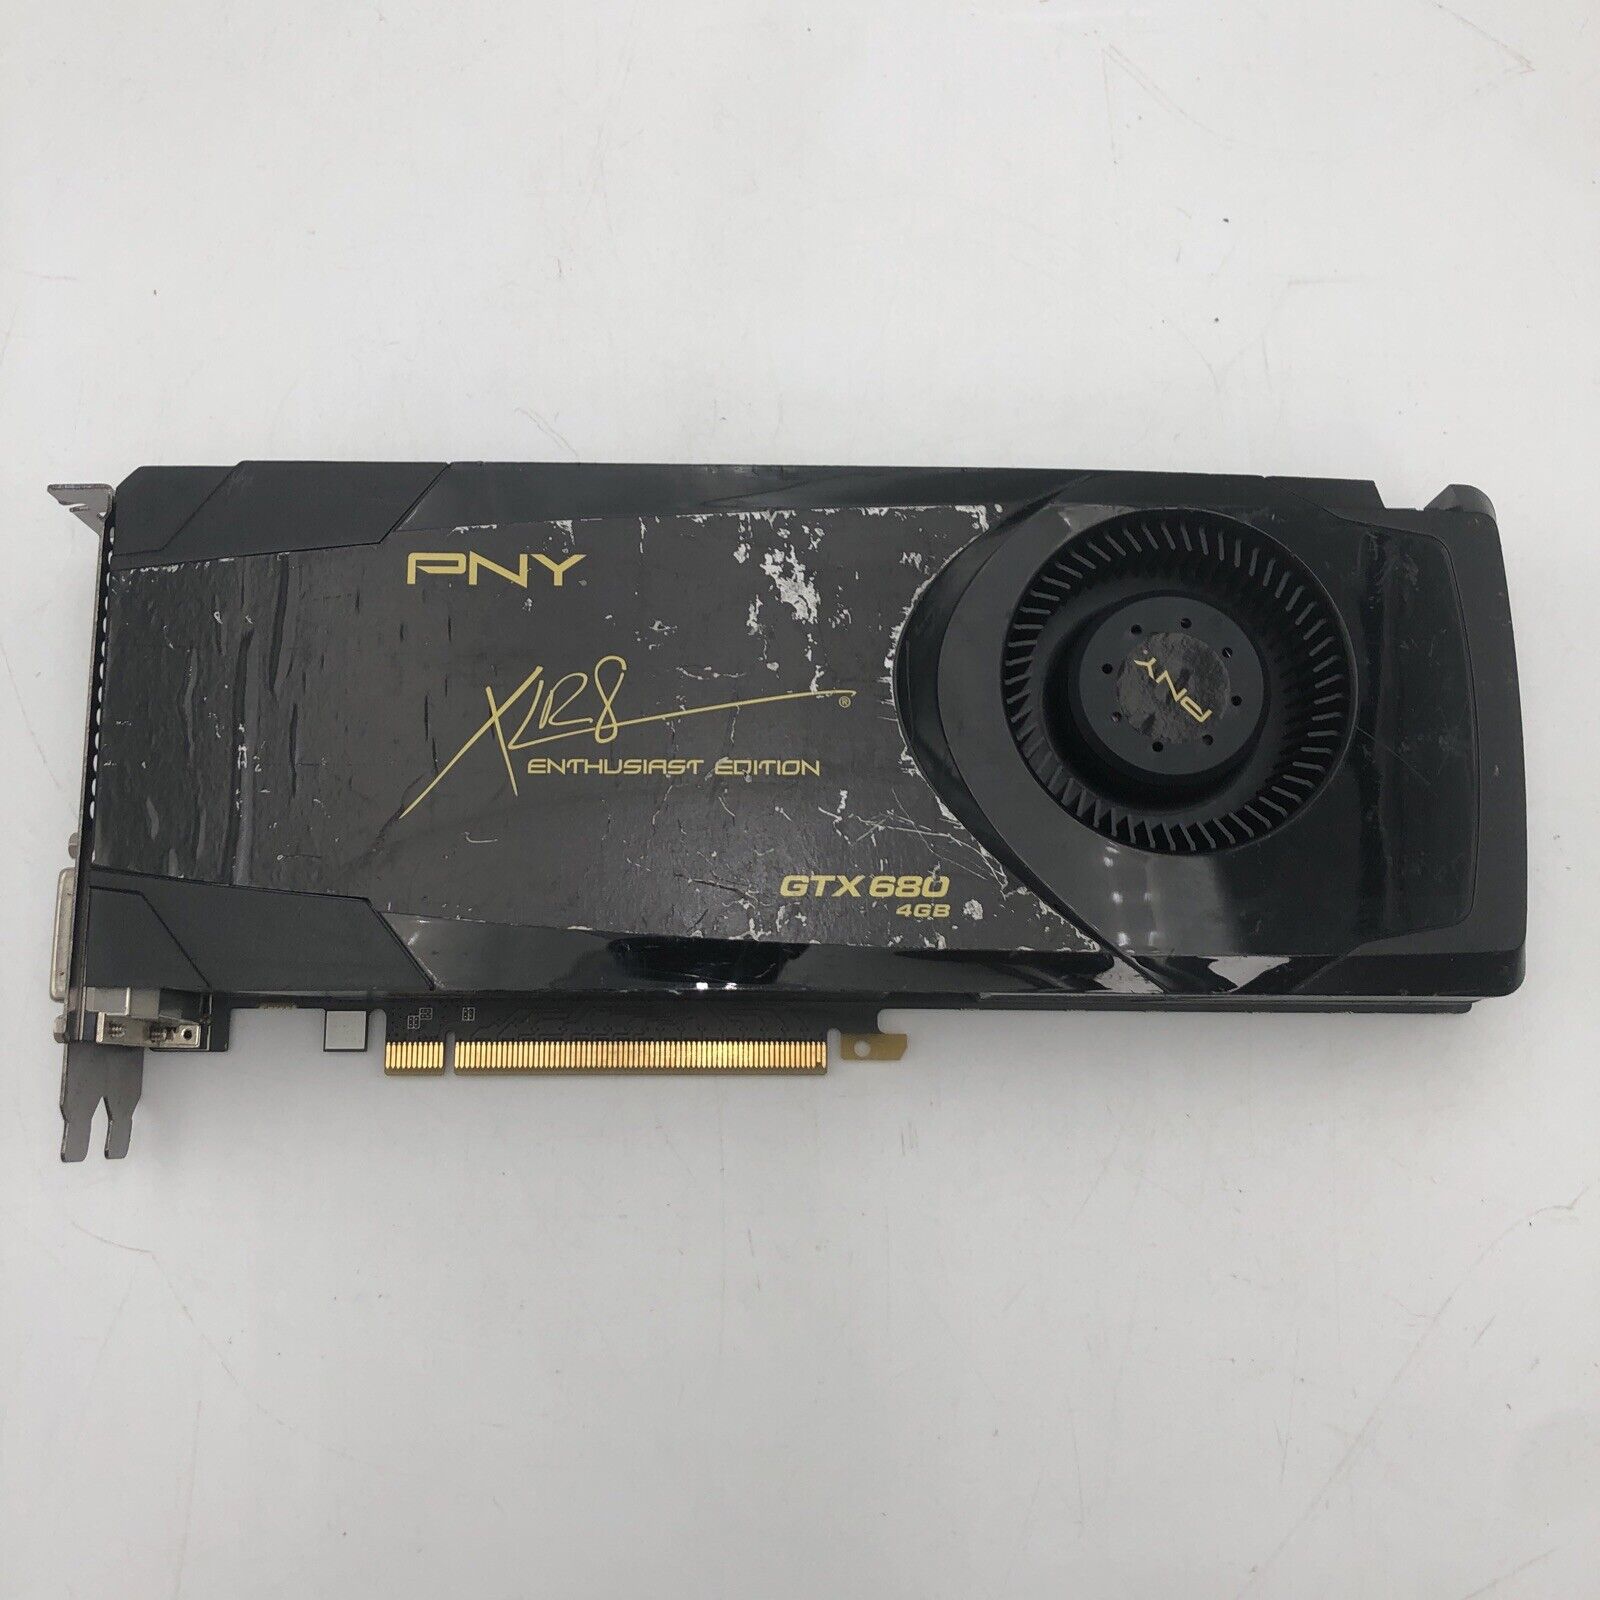 Used PNY GeForce GTX 680 XLR8 4GB GDDR5 Graphics Card - READ